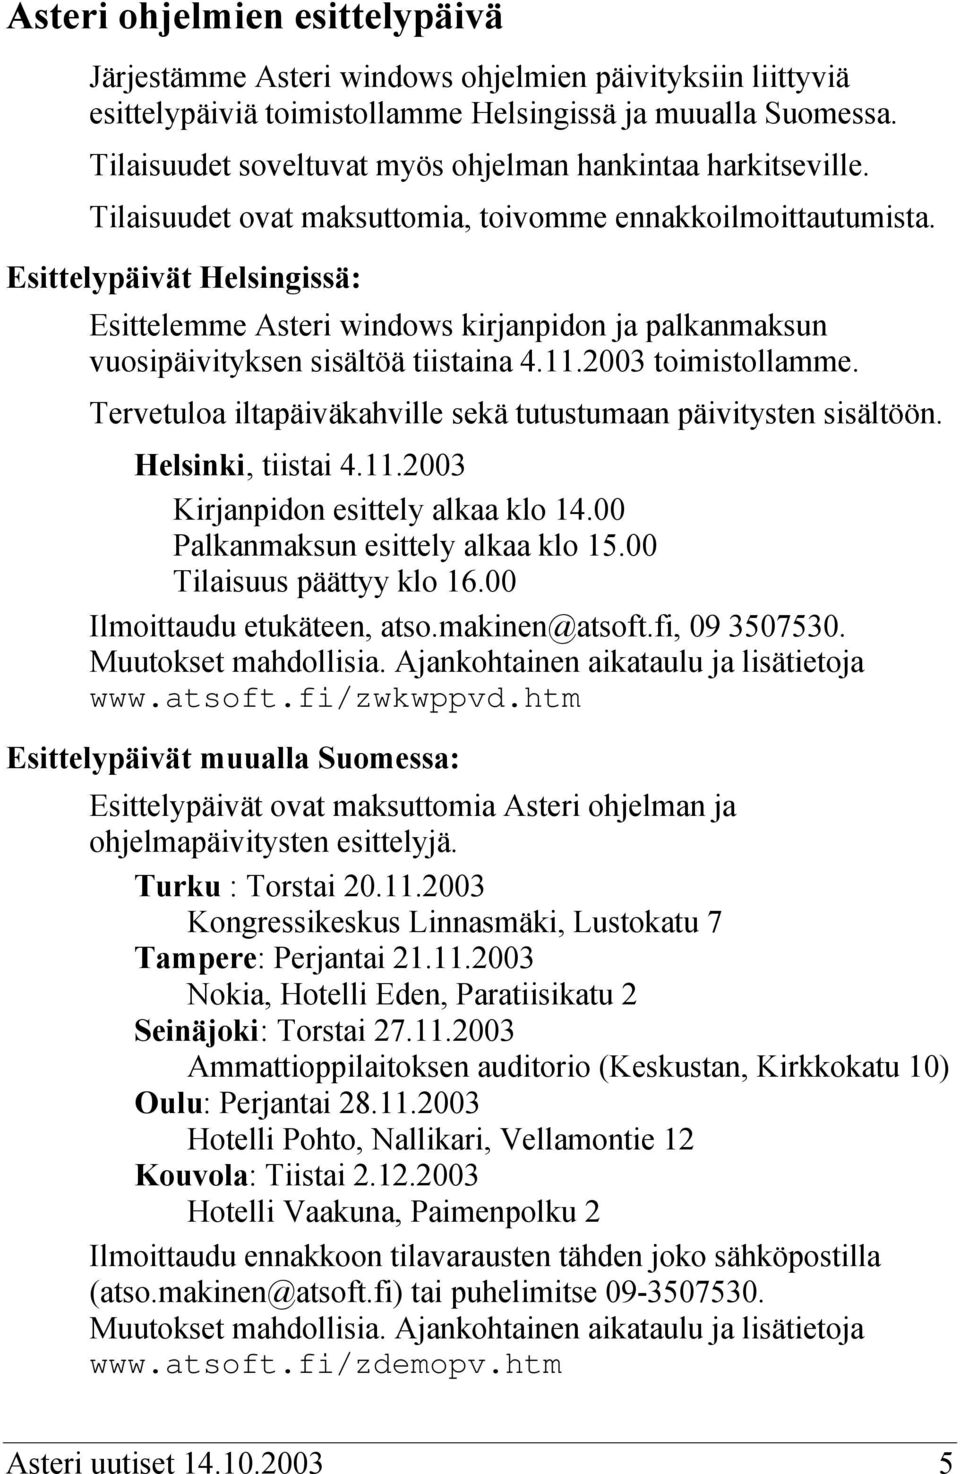 Esittelypäivät Helsingissä: Esittelemme Asteri windows kirjanpidon ja palkanmaksun vuosipäivityksen sisältöä tiistaina 4.11.2003 toimistollamme.